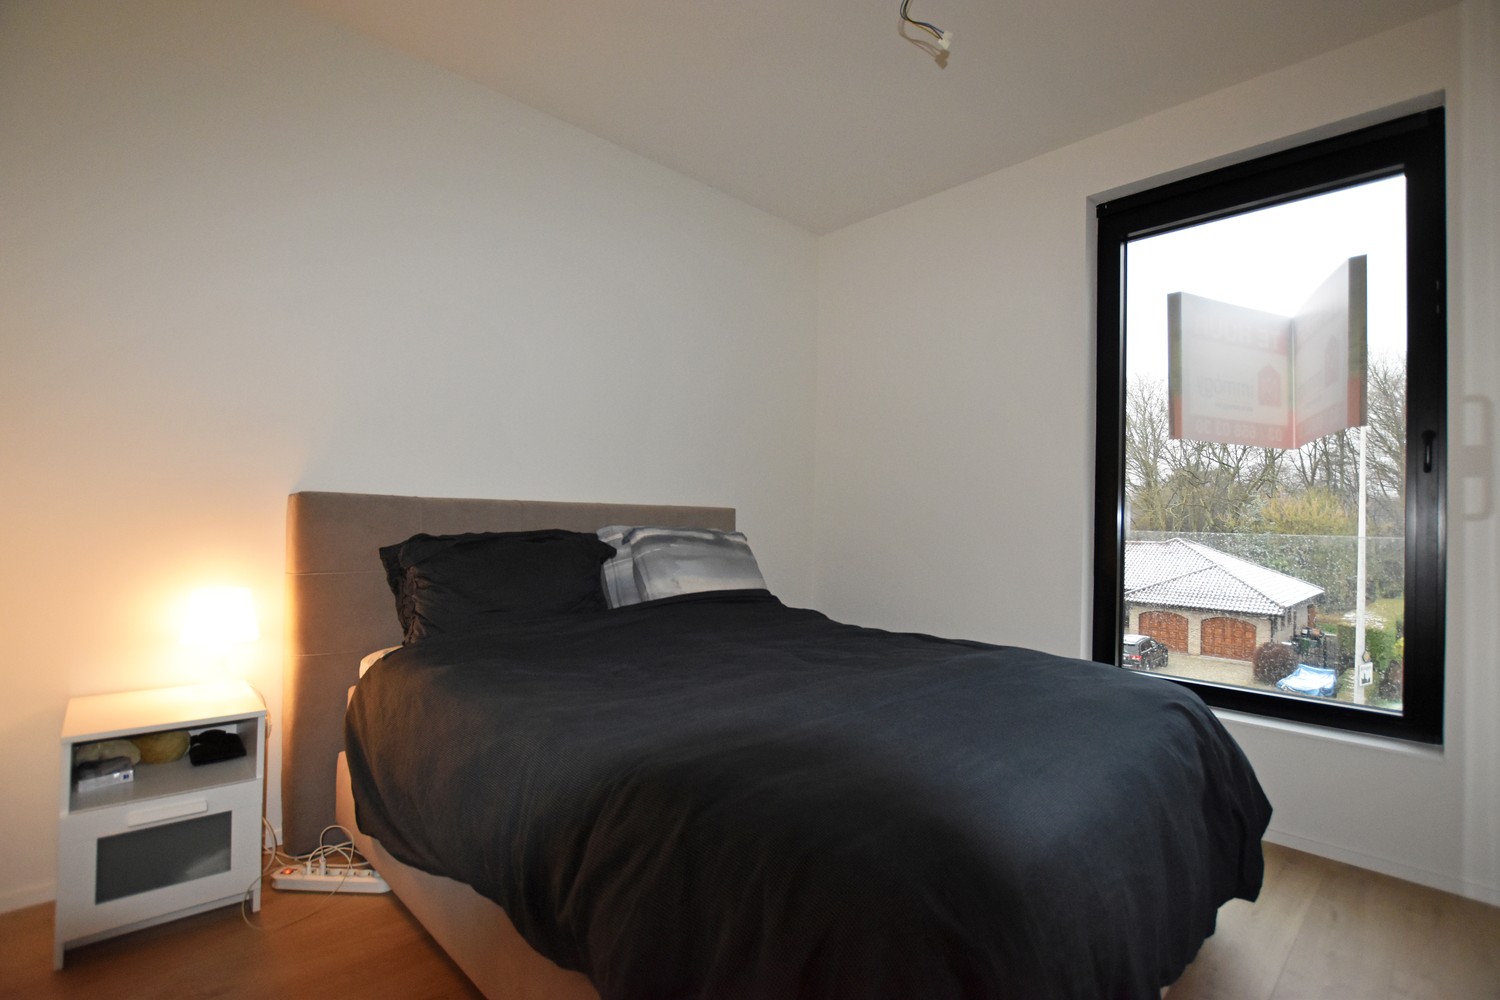 Stijlvol afgewerkt appartement met 2 slaapkamers, terras & autostaanplaats/garagebox in Wijnegem! afbeelding 7